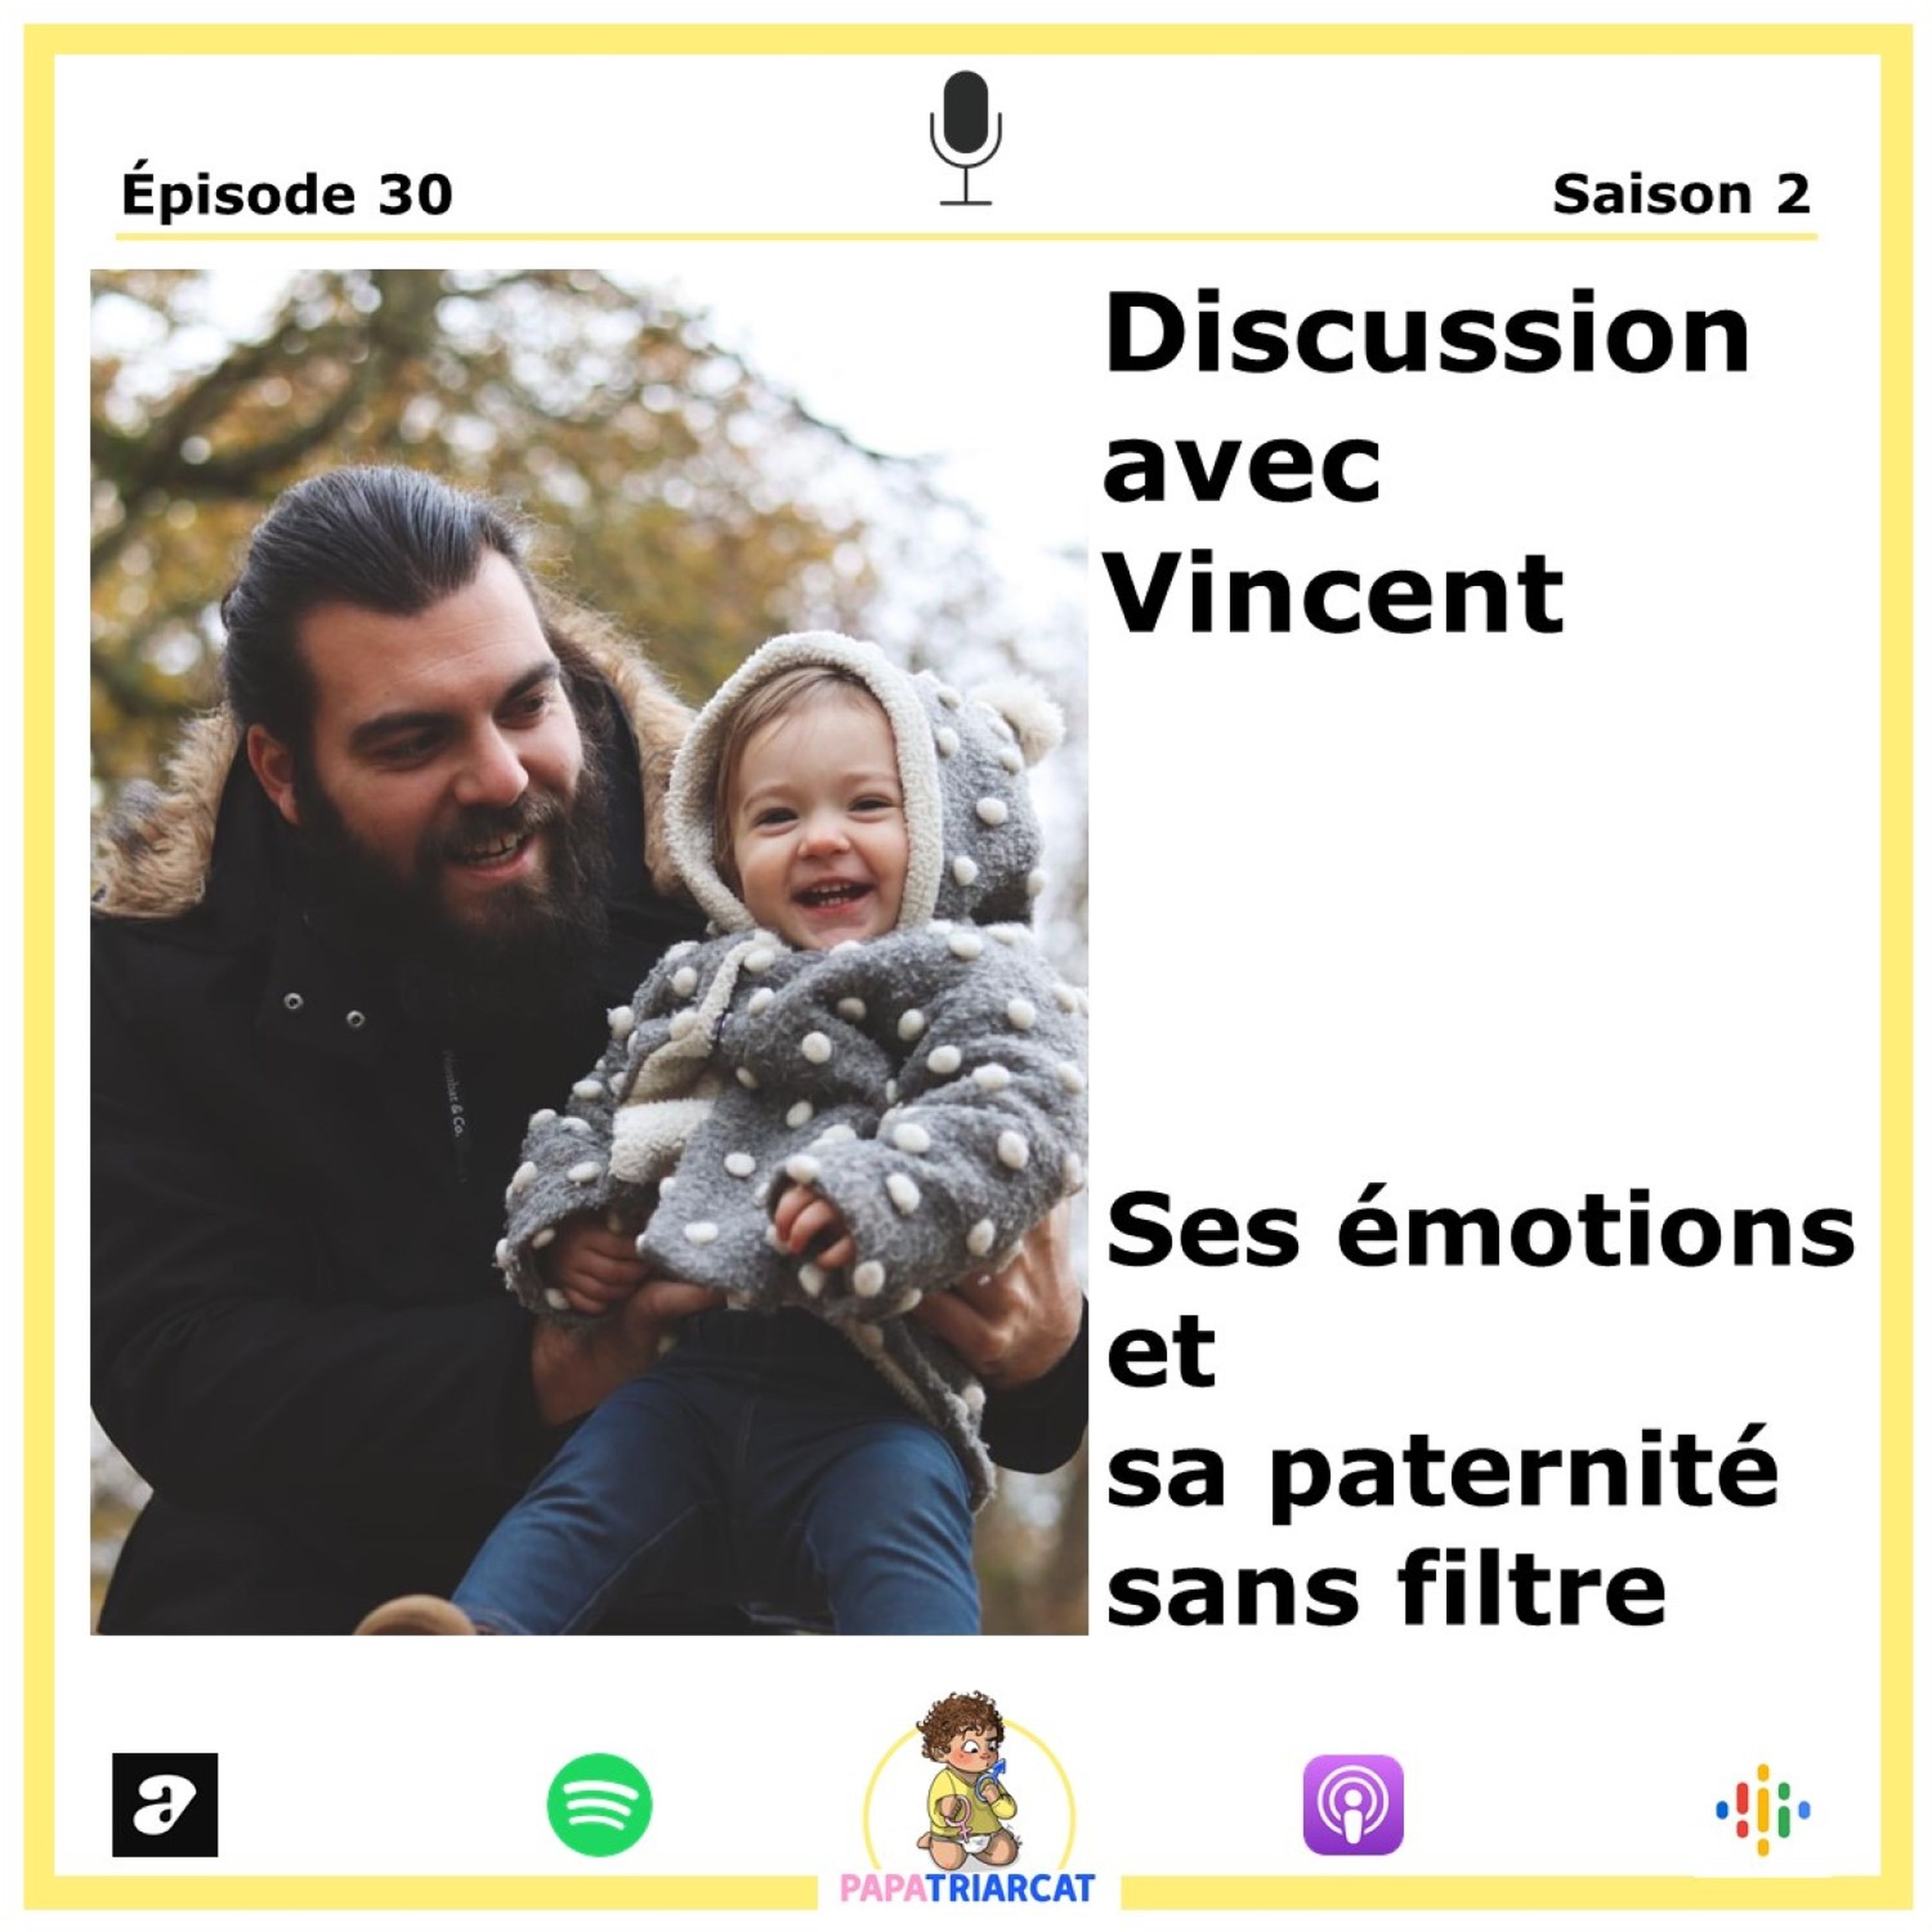 #30 - Ses émotions et sa paternité sans filtre - Discussion avec Vincent